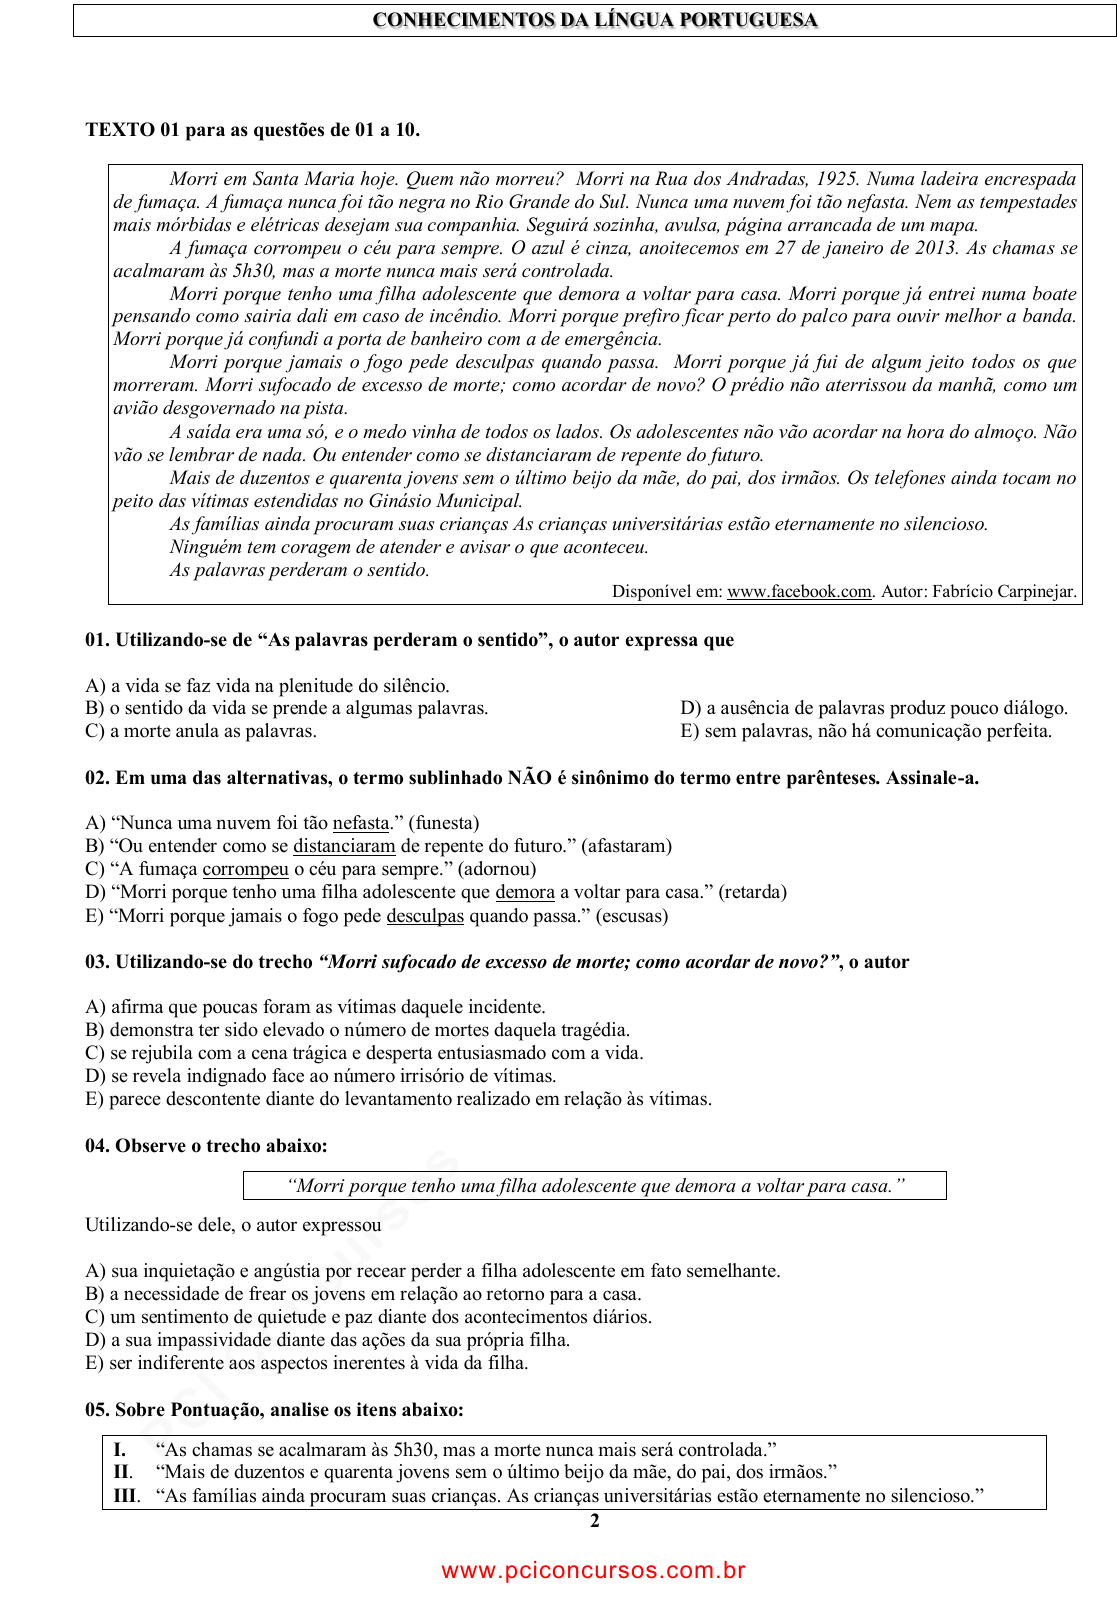 Prova COMPESA - UPENETIAUPE - 2013 - para Analista de Saneamento -  Engenheiro Mecânico.pdf - Provas de Concursos Públicos